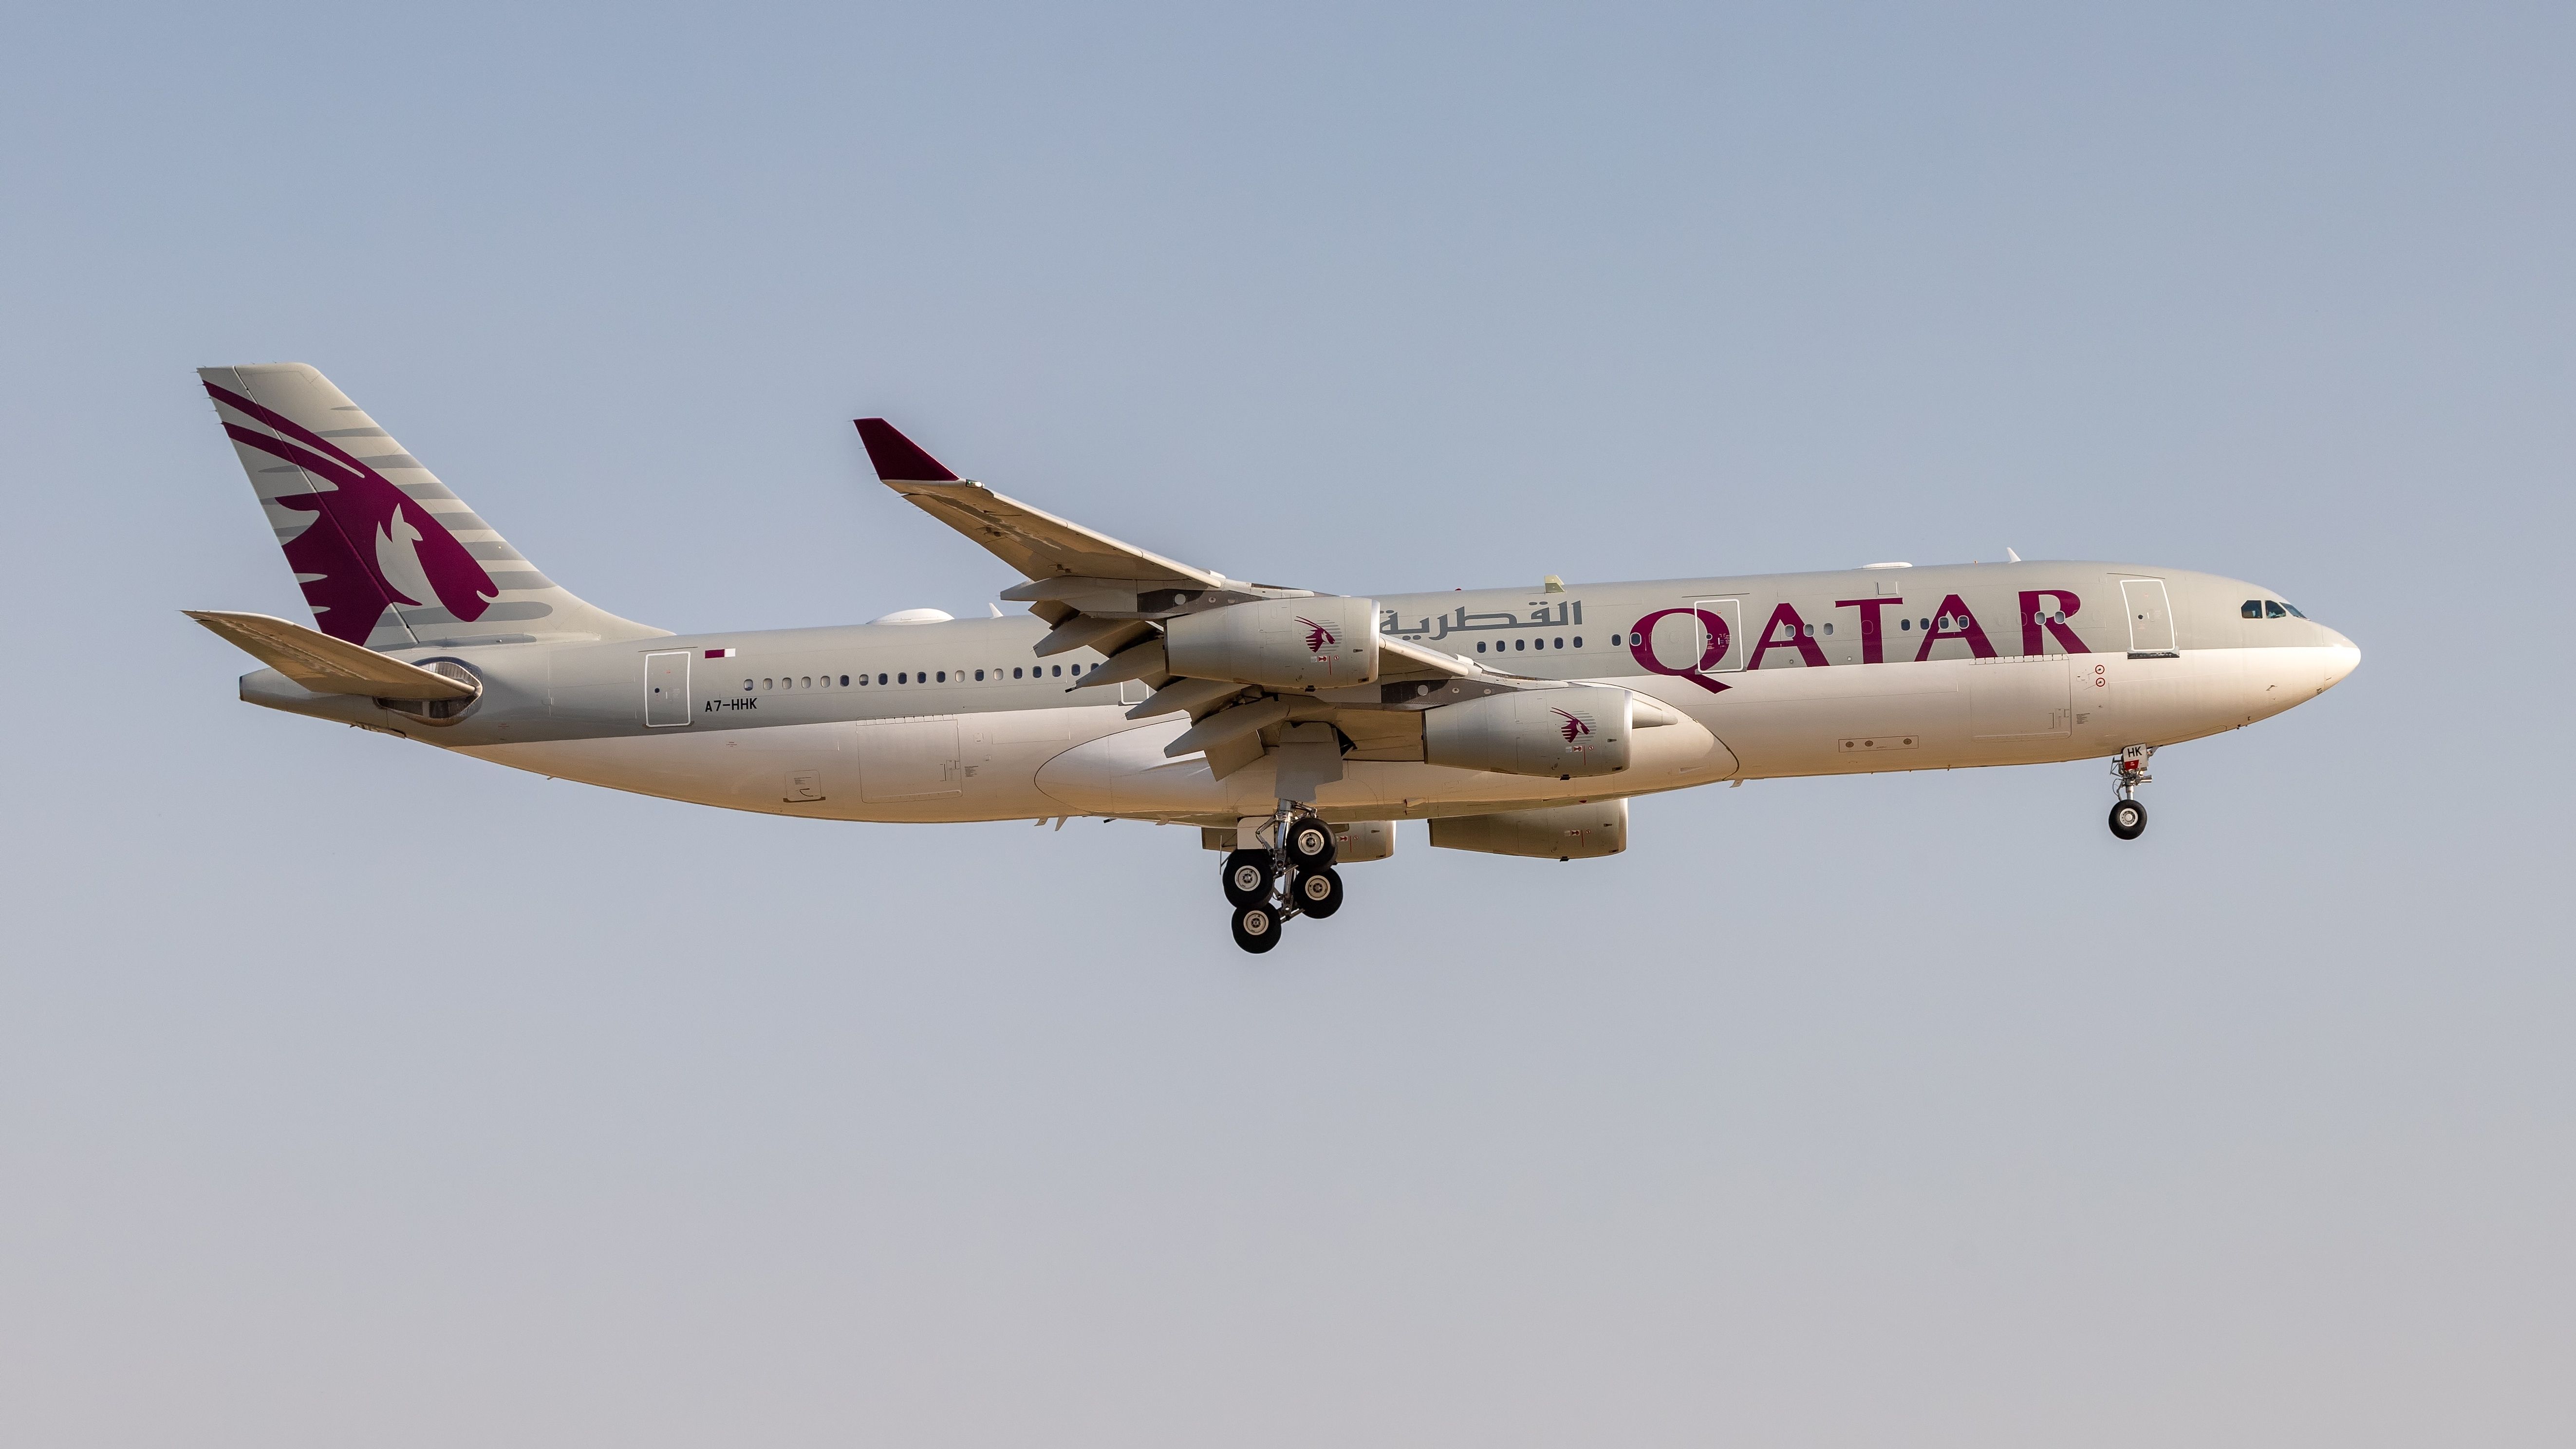 A Qatar Amiri Flight Airbus A340-200 flying in the sky.